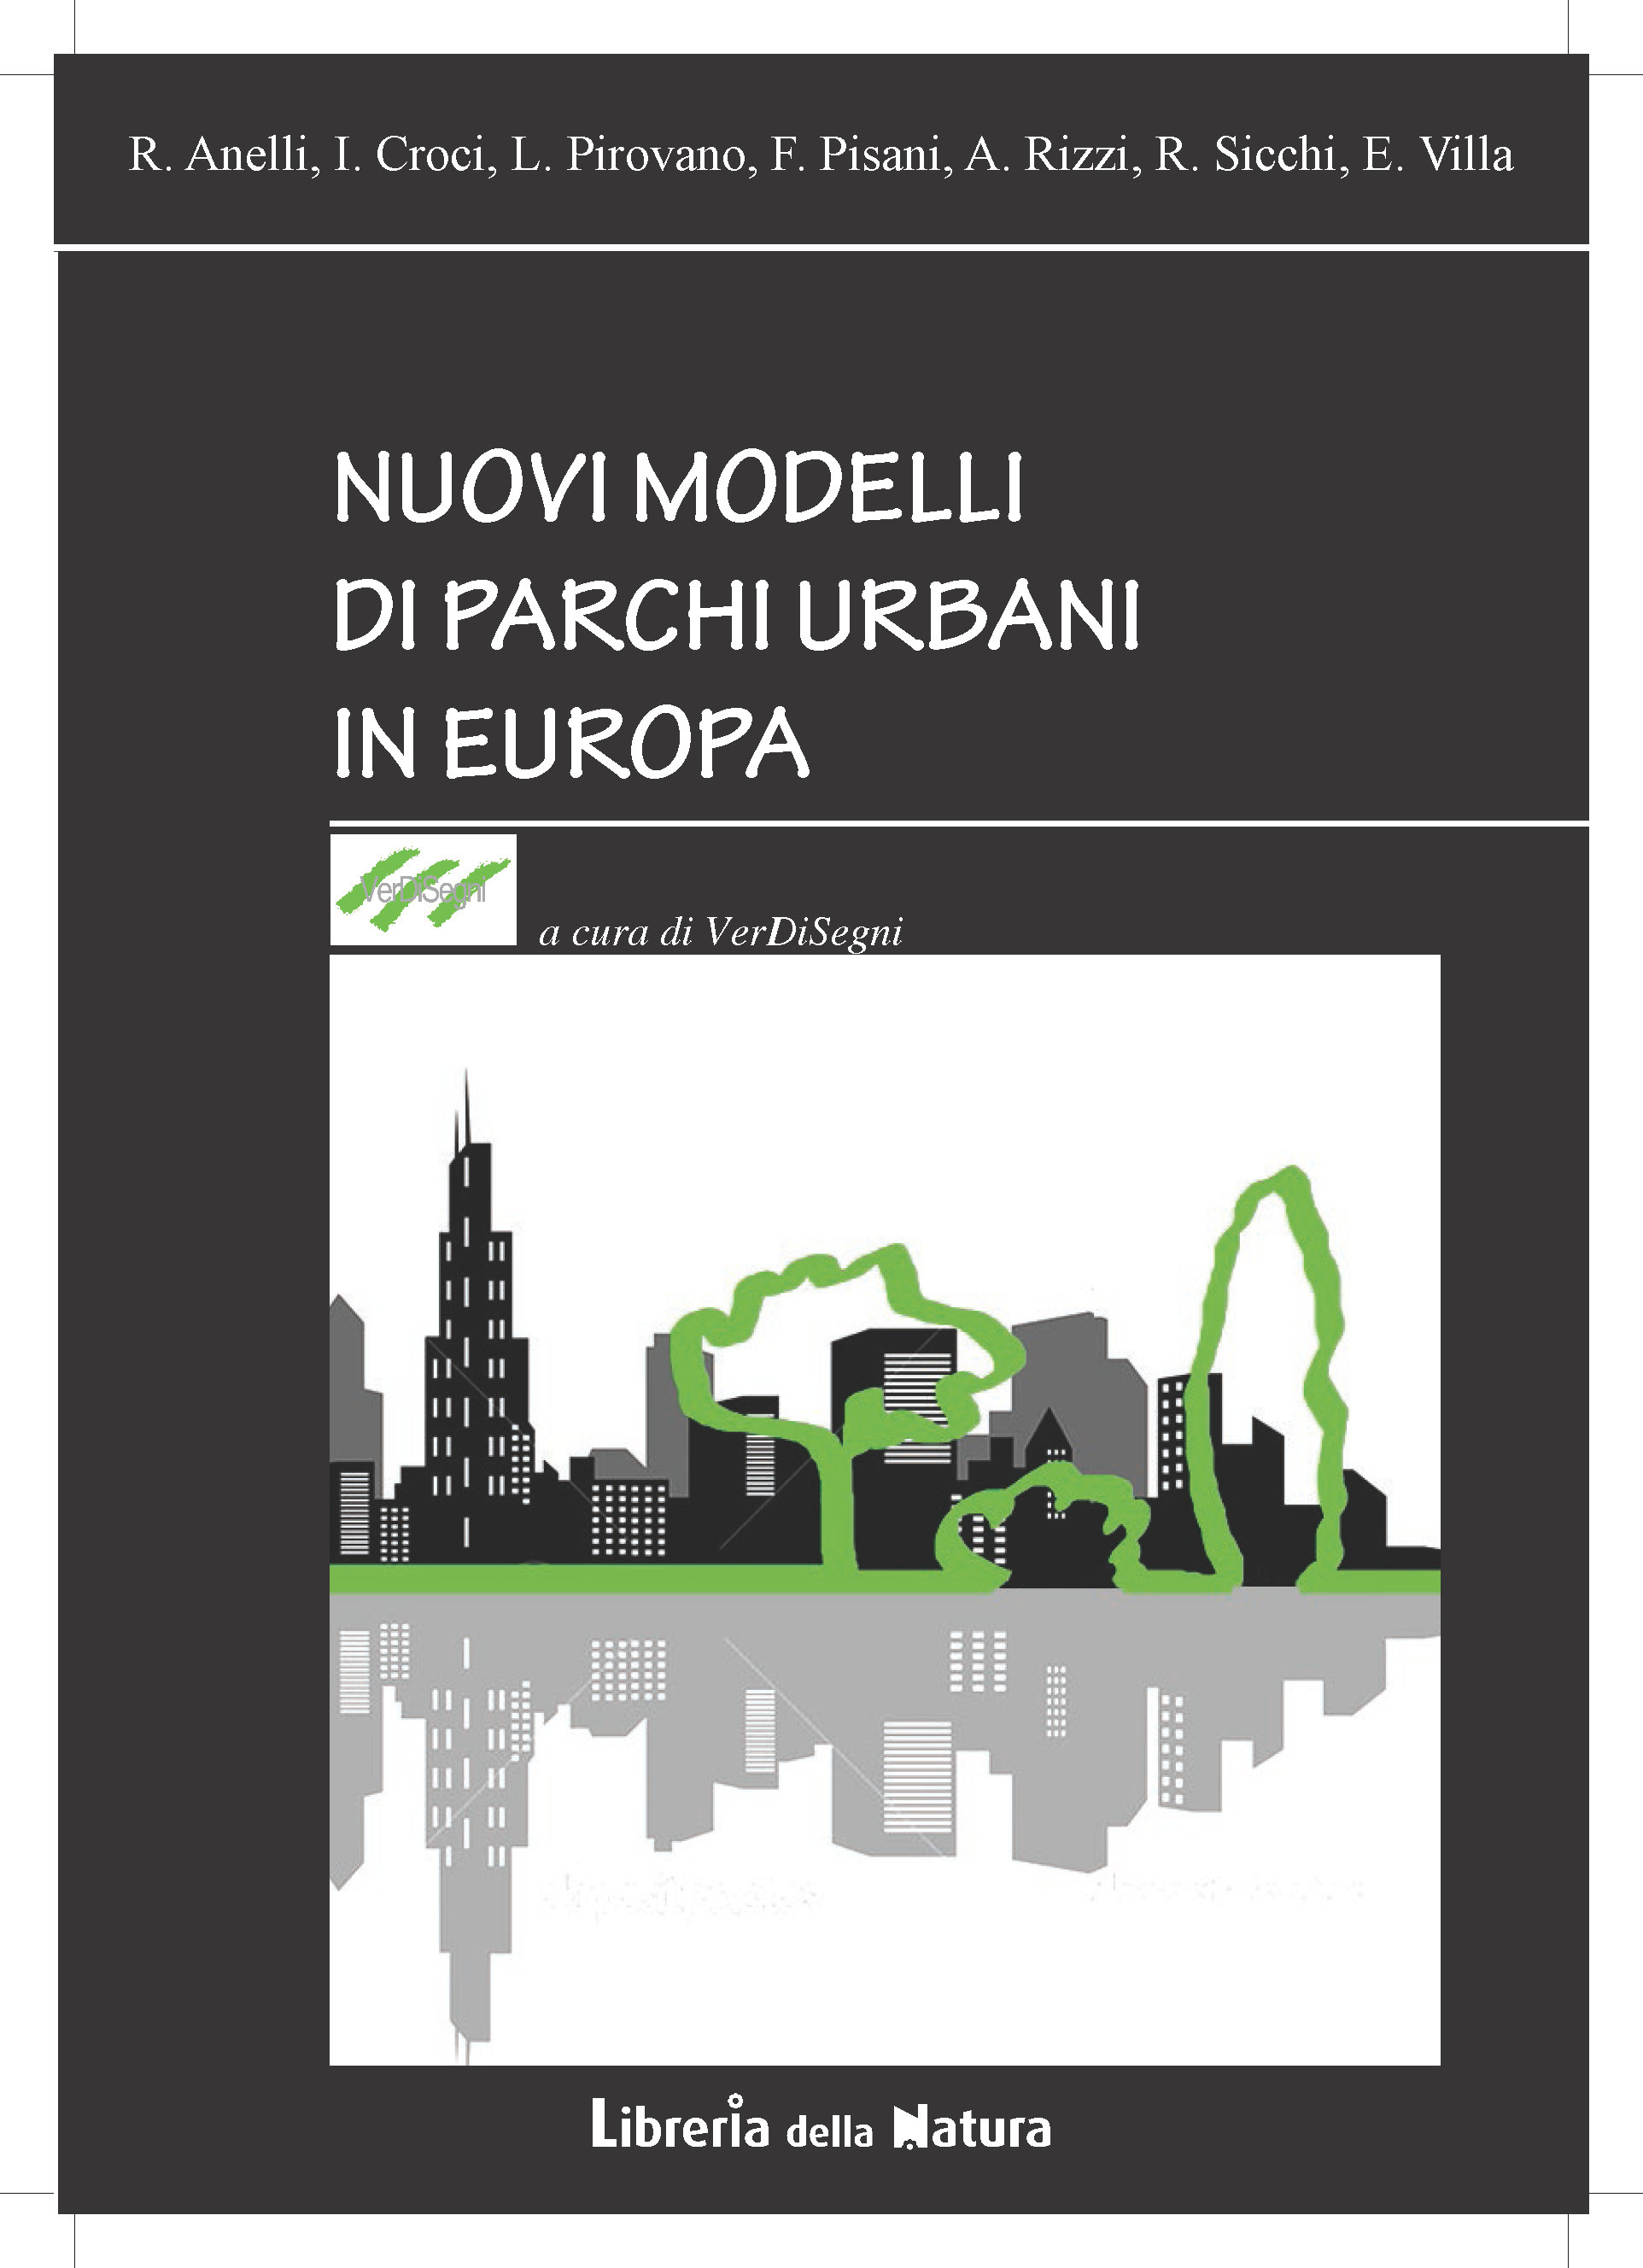 NUOVI MODELLI DI PARCHI URBANI IN EUROPA versione PDF